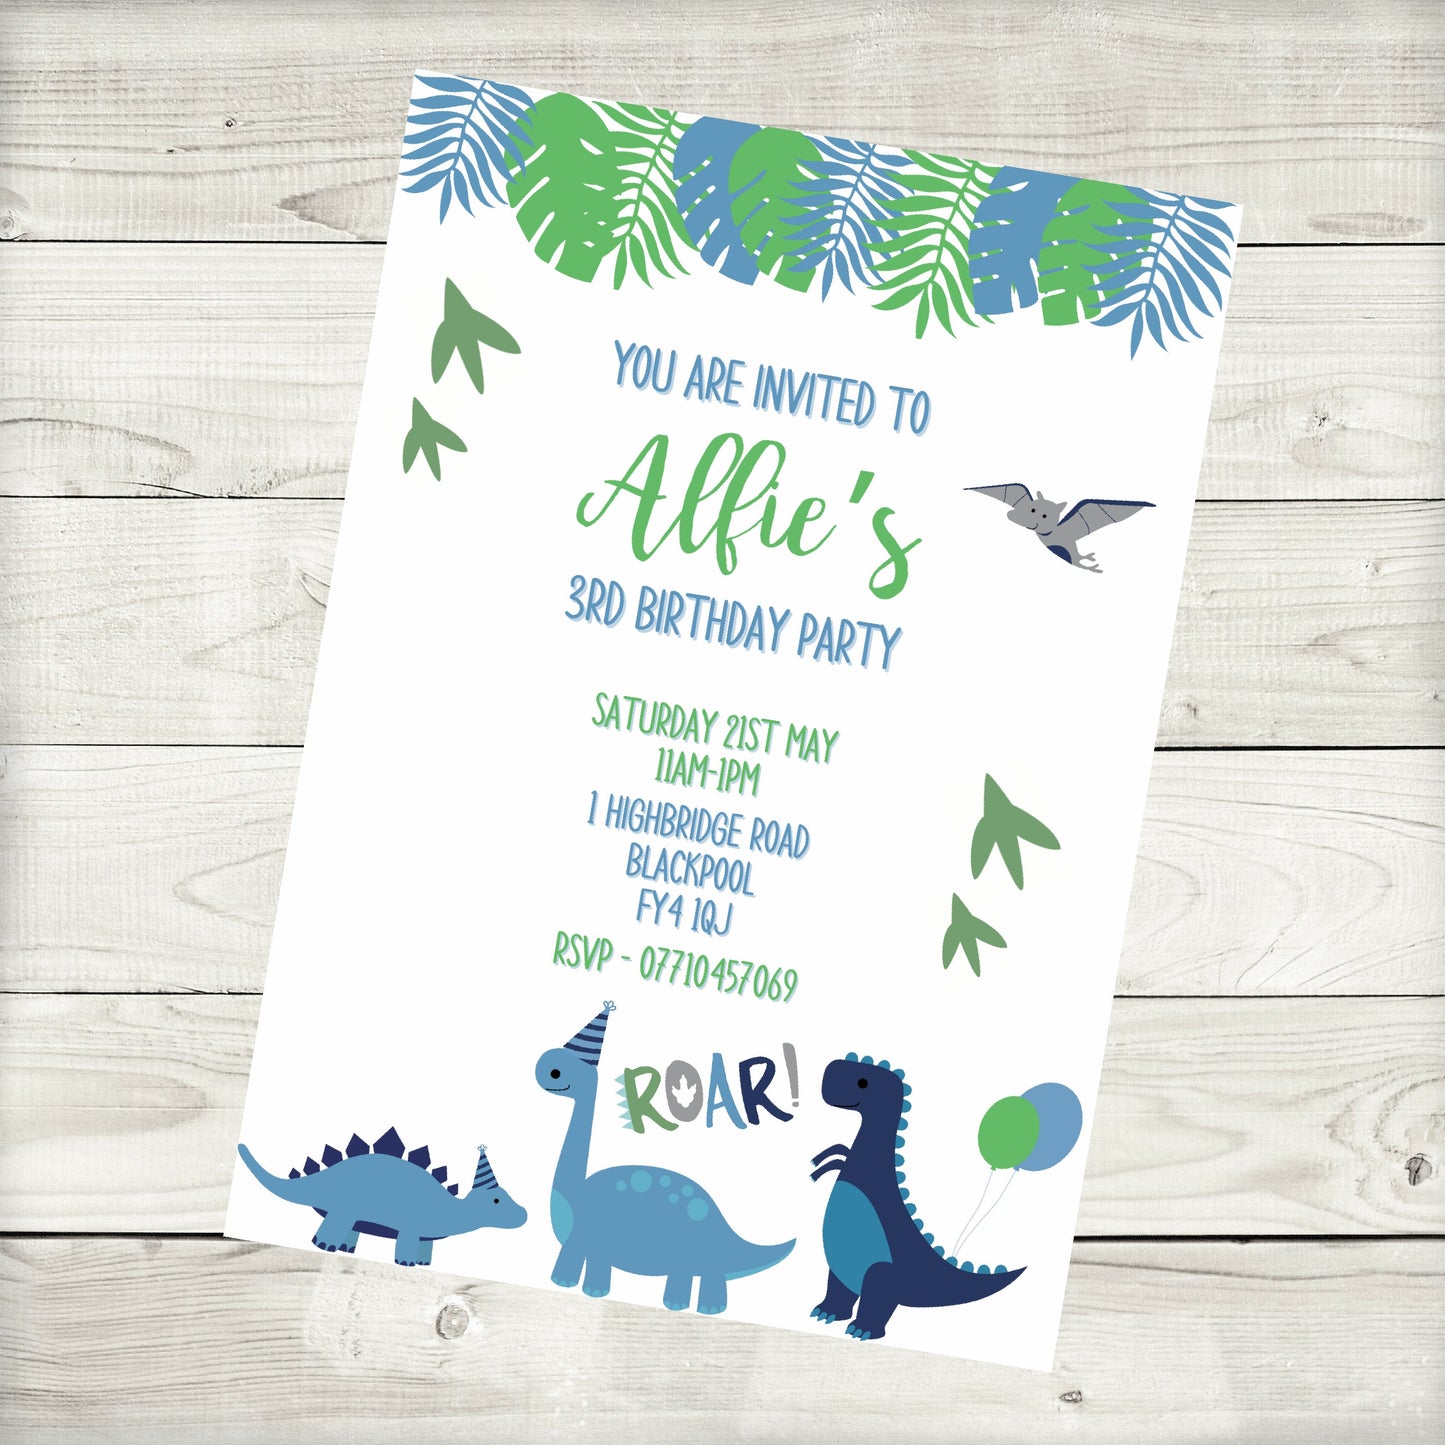 Dinosaur Birthday Invitations | A6 Invites | Dinosaur Theme Invitations | Party Invitations